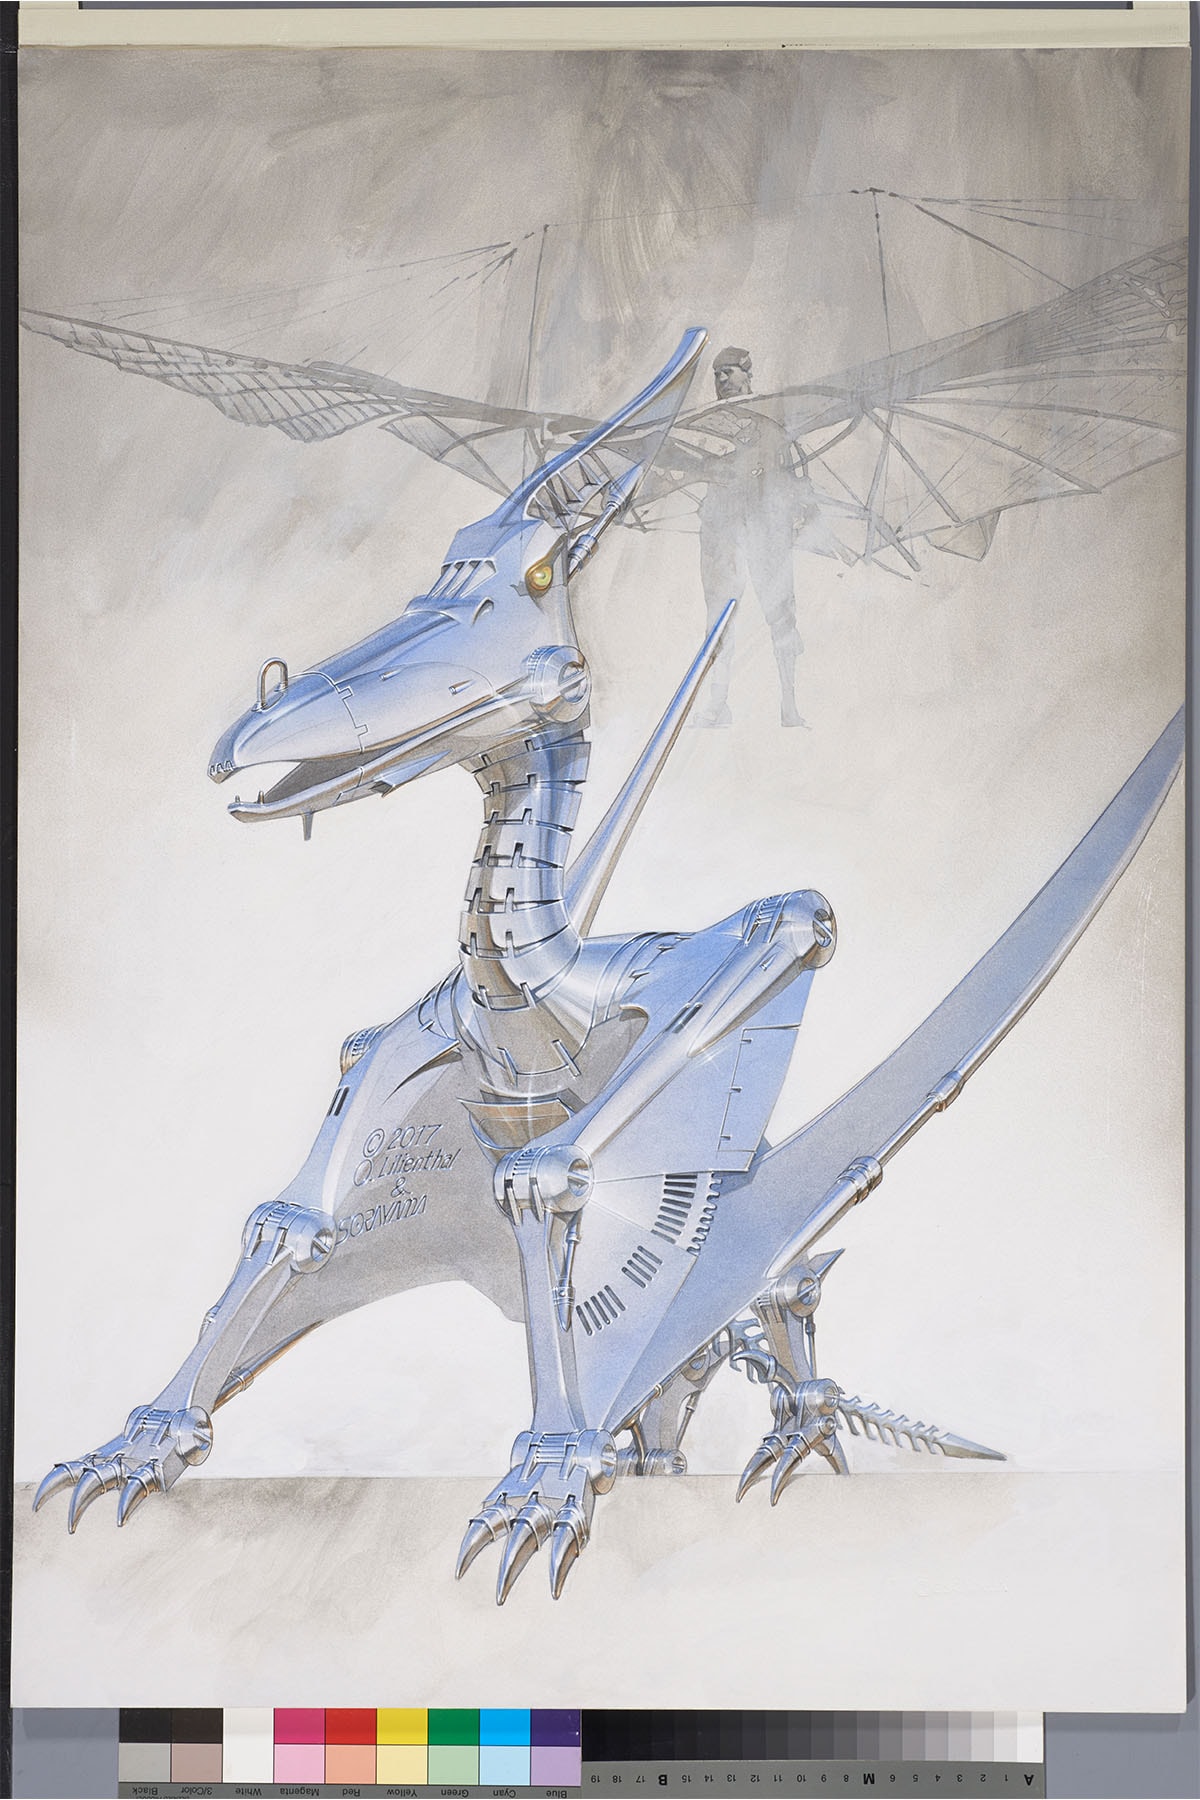 ナンズカ 2G ダイナソーリア 空山基の新作個展 “Dinosauria” が NANZUKA 2G にて開催 Hajime Sorayama solo Exhibition Nanzuka